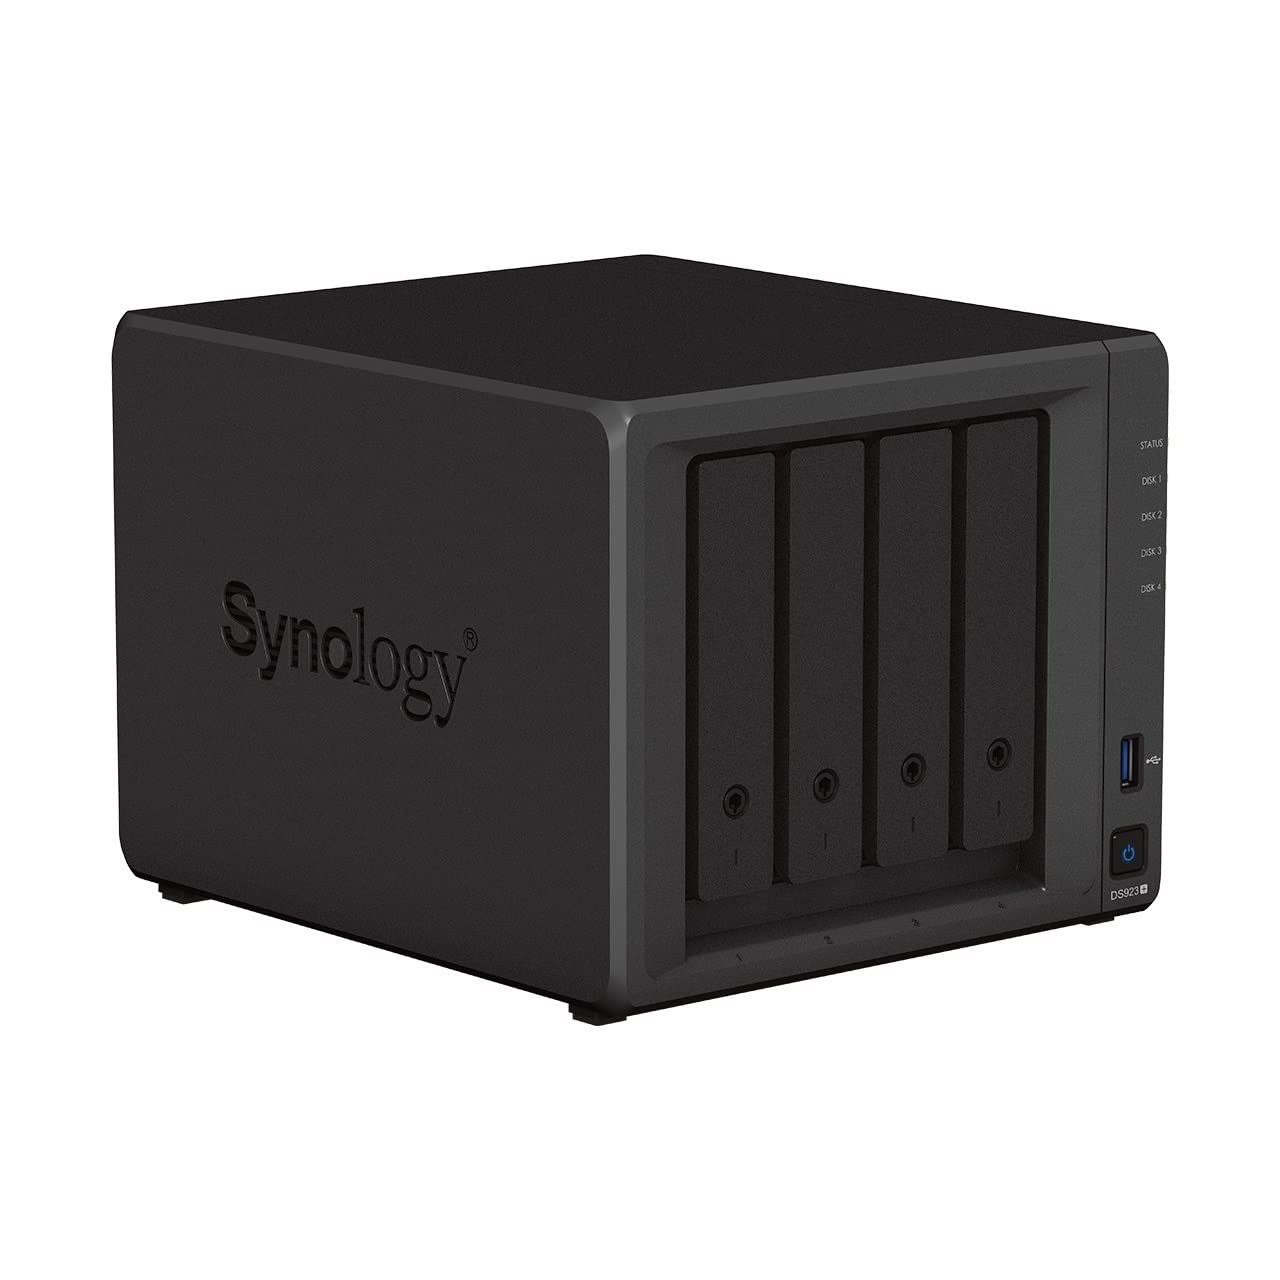 Synology DS923+ - NAS a 4 bay AMD Ryzen™ 4 thread R1600 dual-core 4GB RAM 2 porta LAN 4 dischi rigidi NAS Seagate IronWolf da 6TB